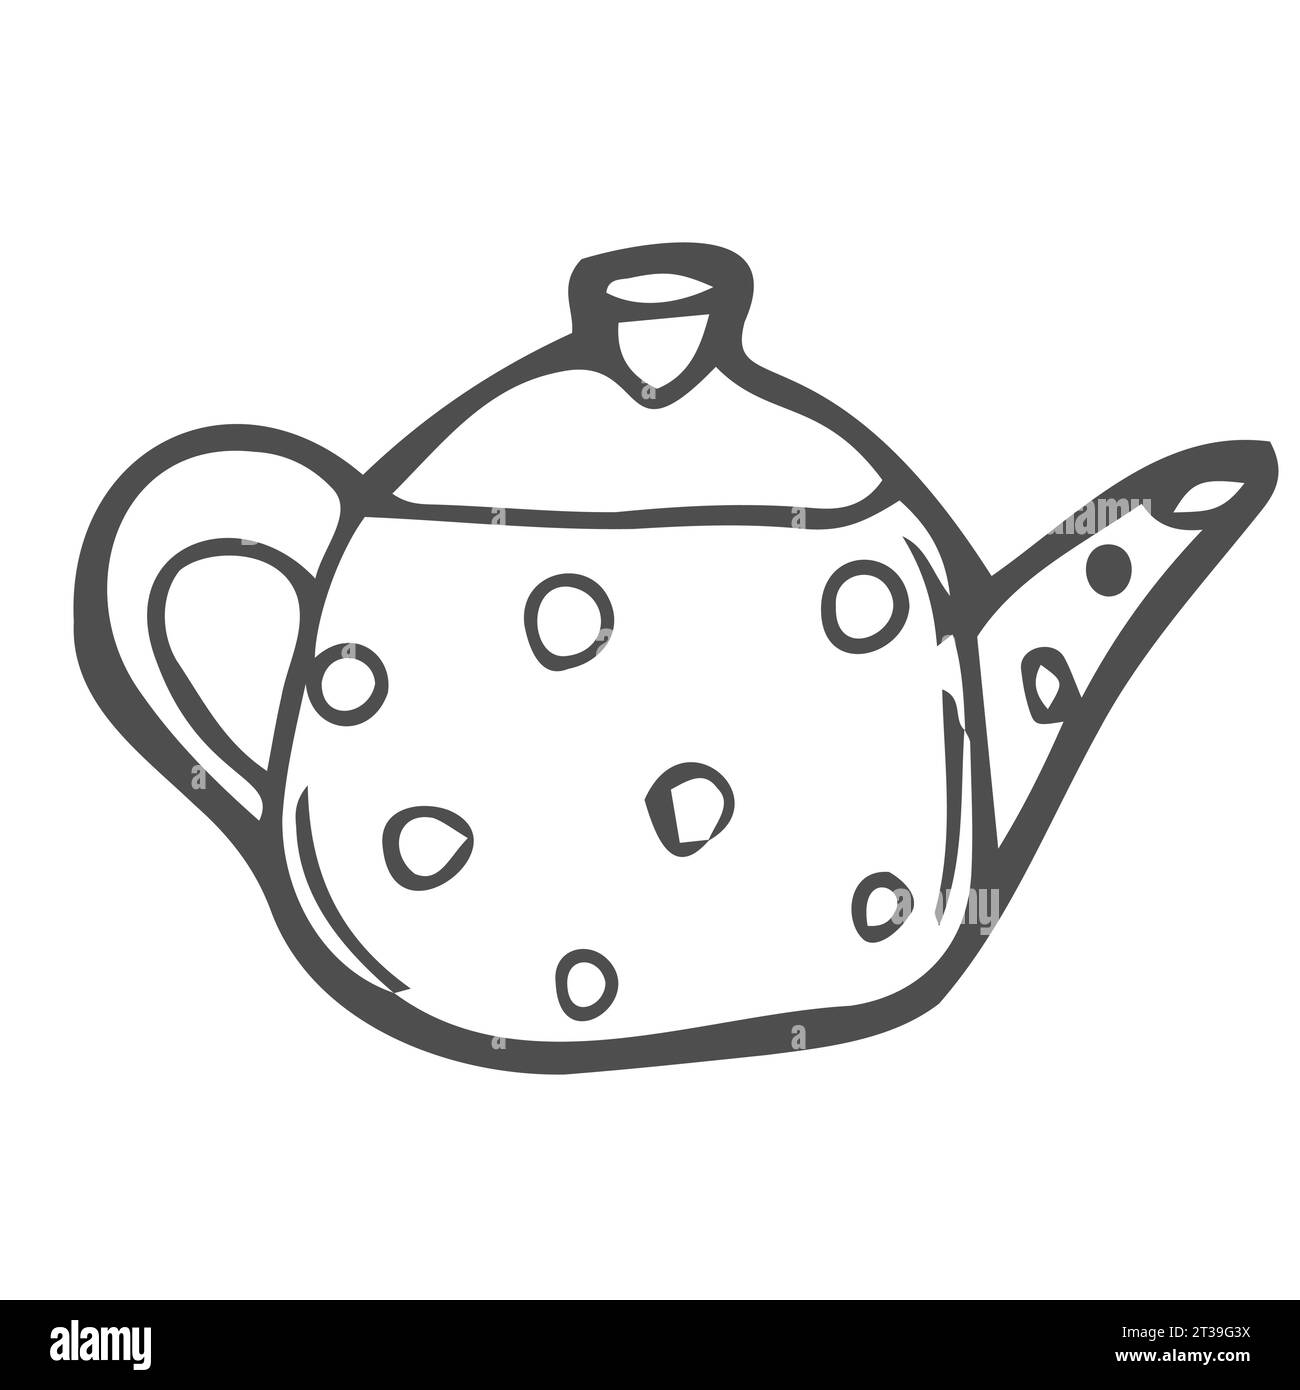 Handgezeichnet, skizziert und im Kritzelstil dekoriert, Symbol der Teekanne. Lineares Schild für mobiles Konzept und Webdesign. Keramik Teekanne Umrissvektor Symbol. Stock Vektor